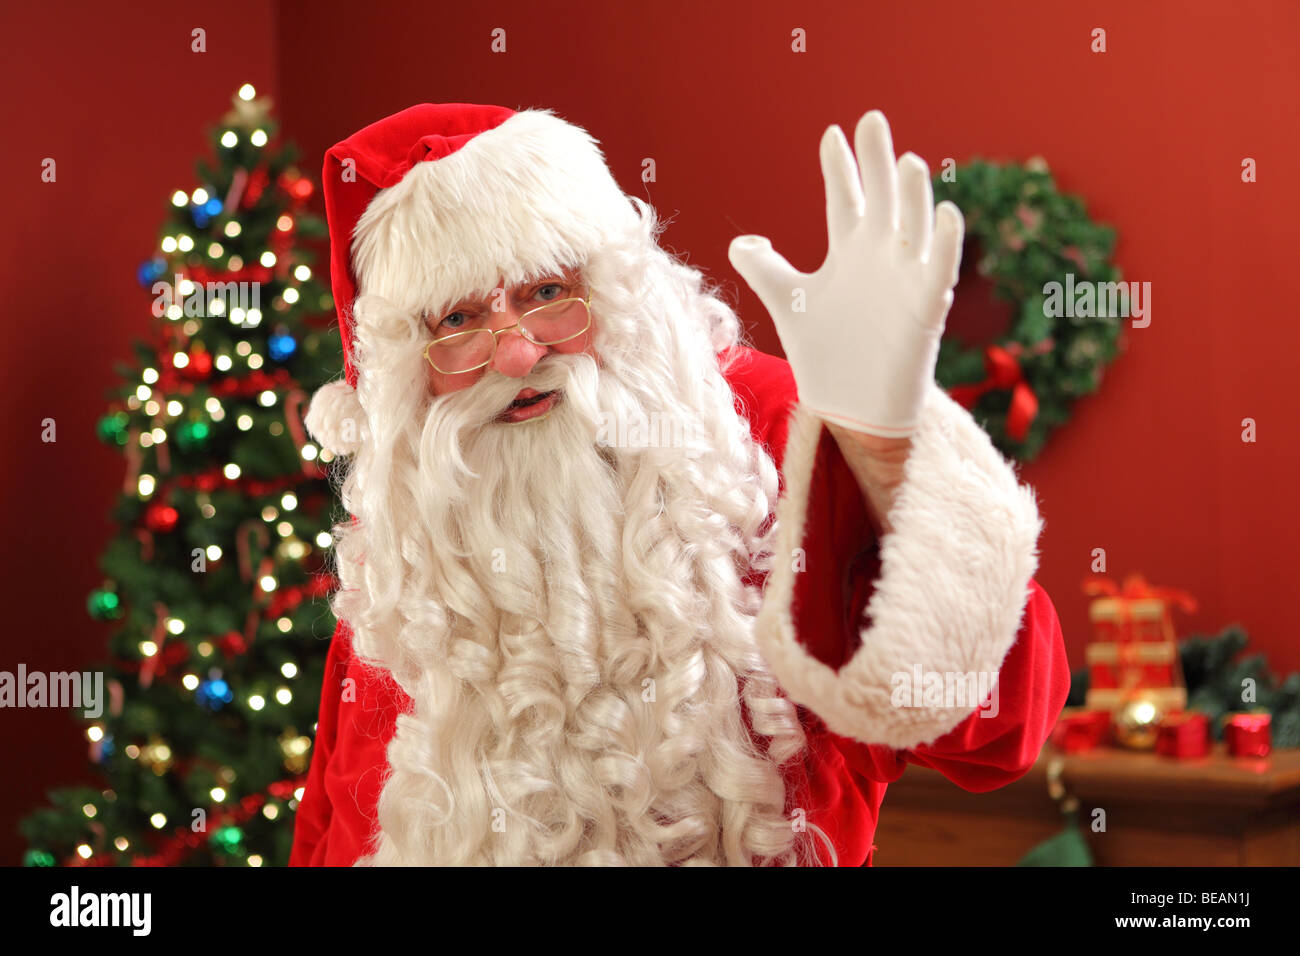 Santa Claus waving at camera Stock Photo